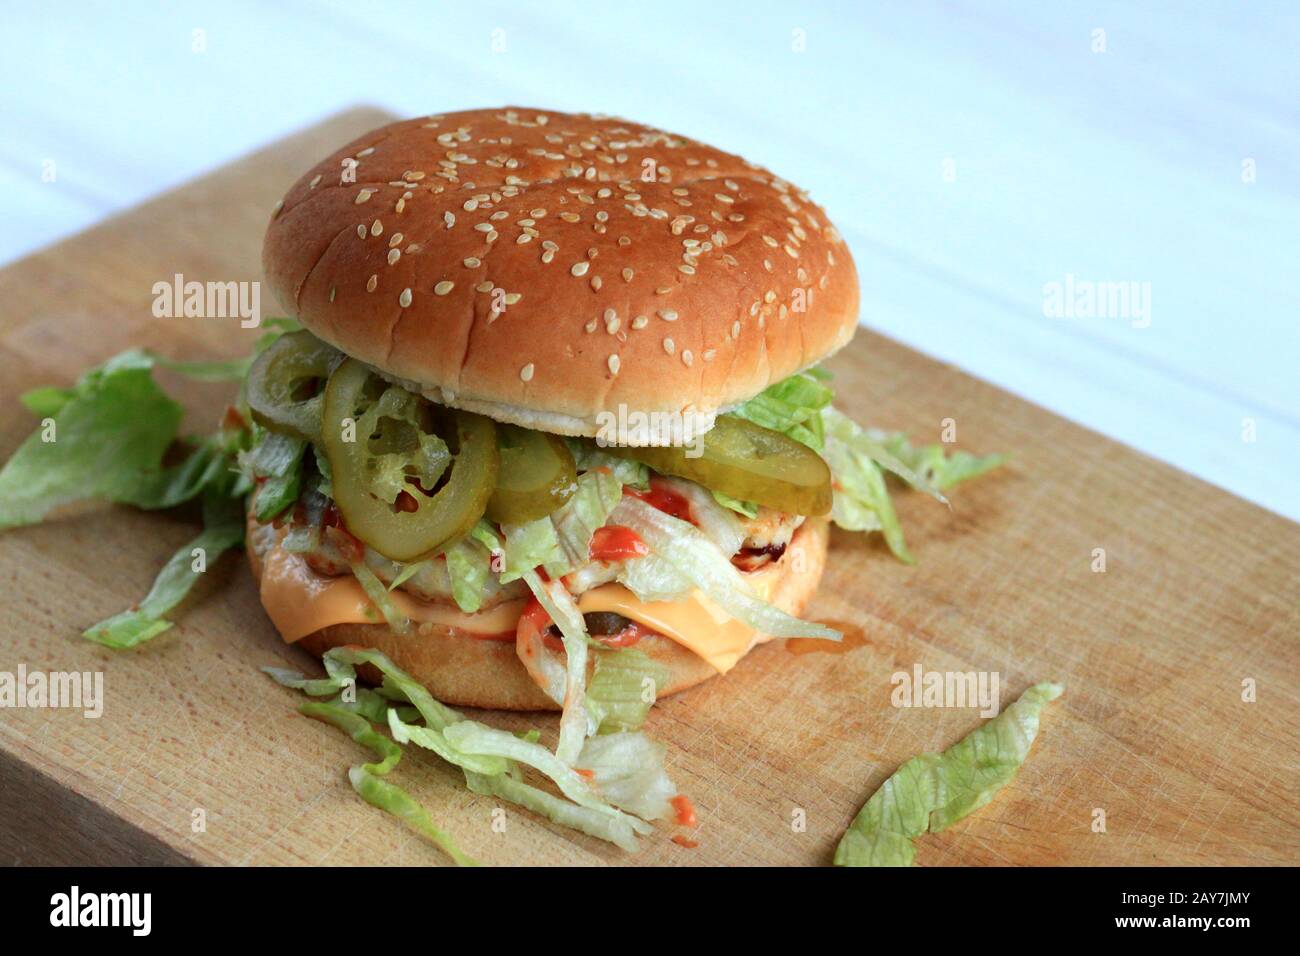 Ein köstlicher hausgemachter Hamburger mit Fleisch und Gemüse.Schmecken SIE EINEN köstlichen hausgemachten Hamburger mit Fleisch und Gemüse.Leckeres Sandwich mit Gemüse Stockfoto